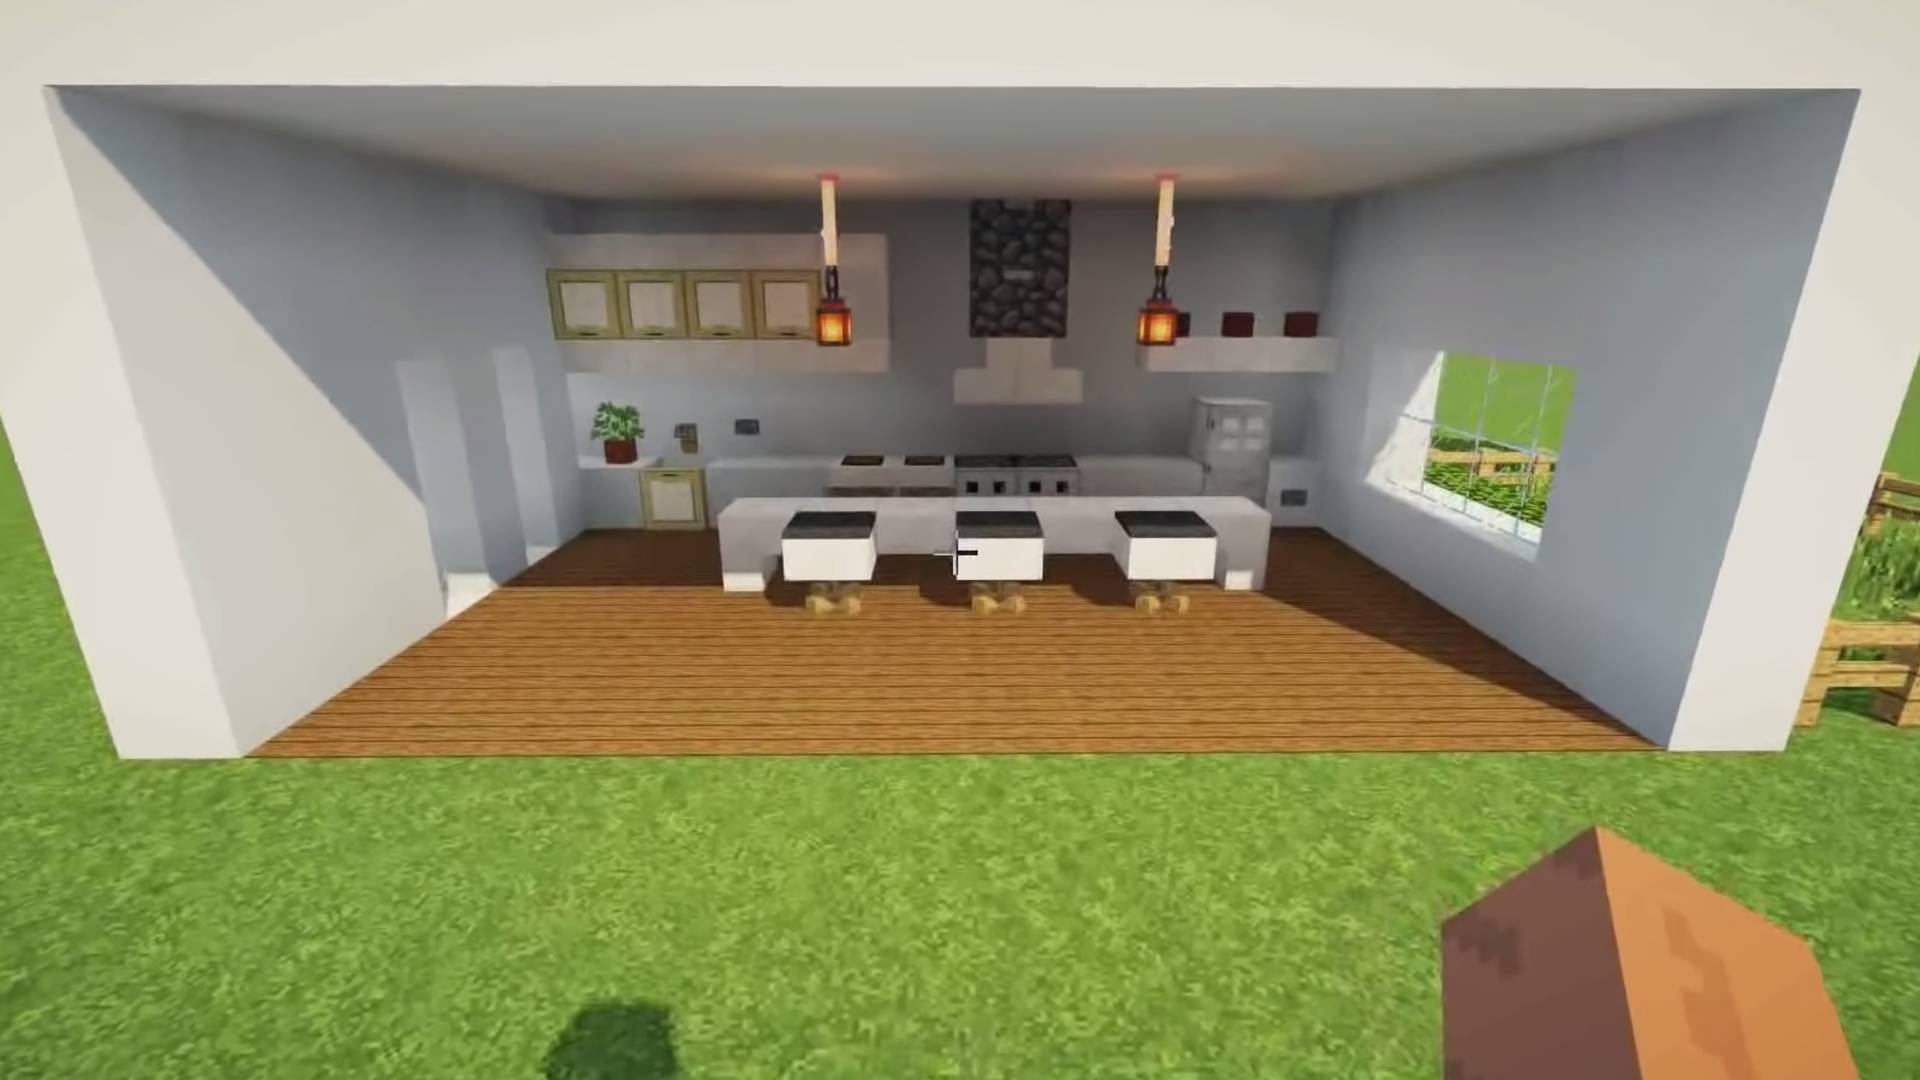  easy minecraft kitchen ideas